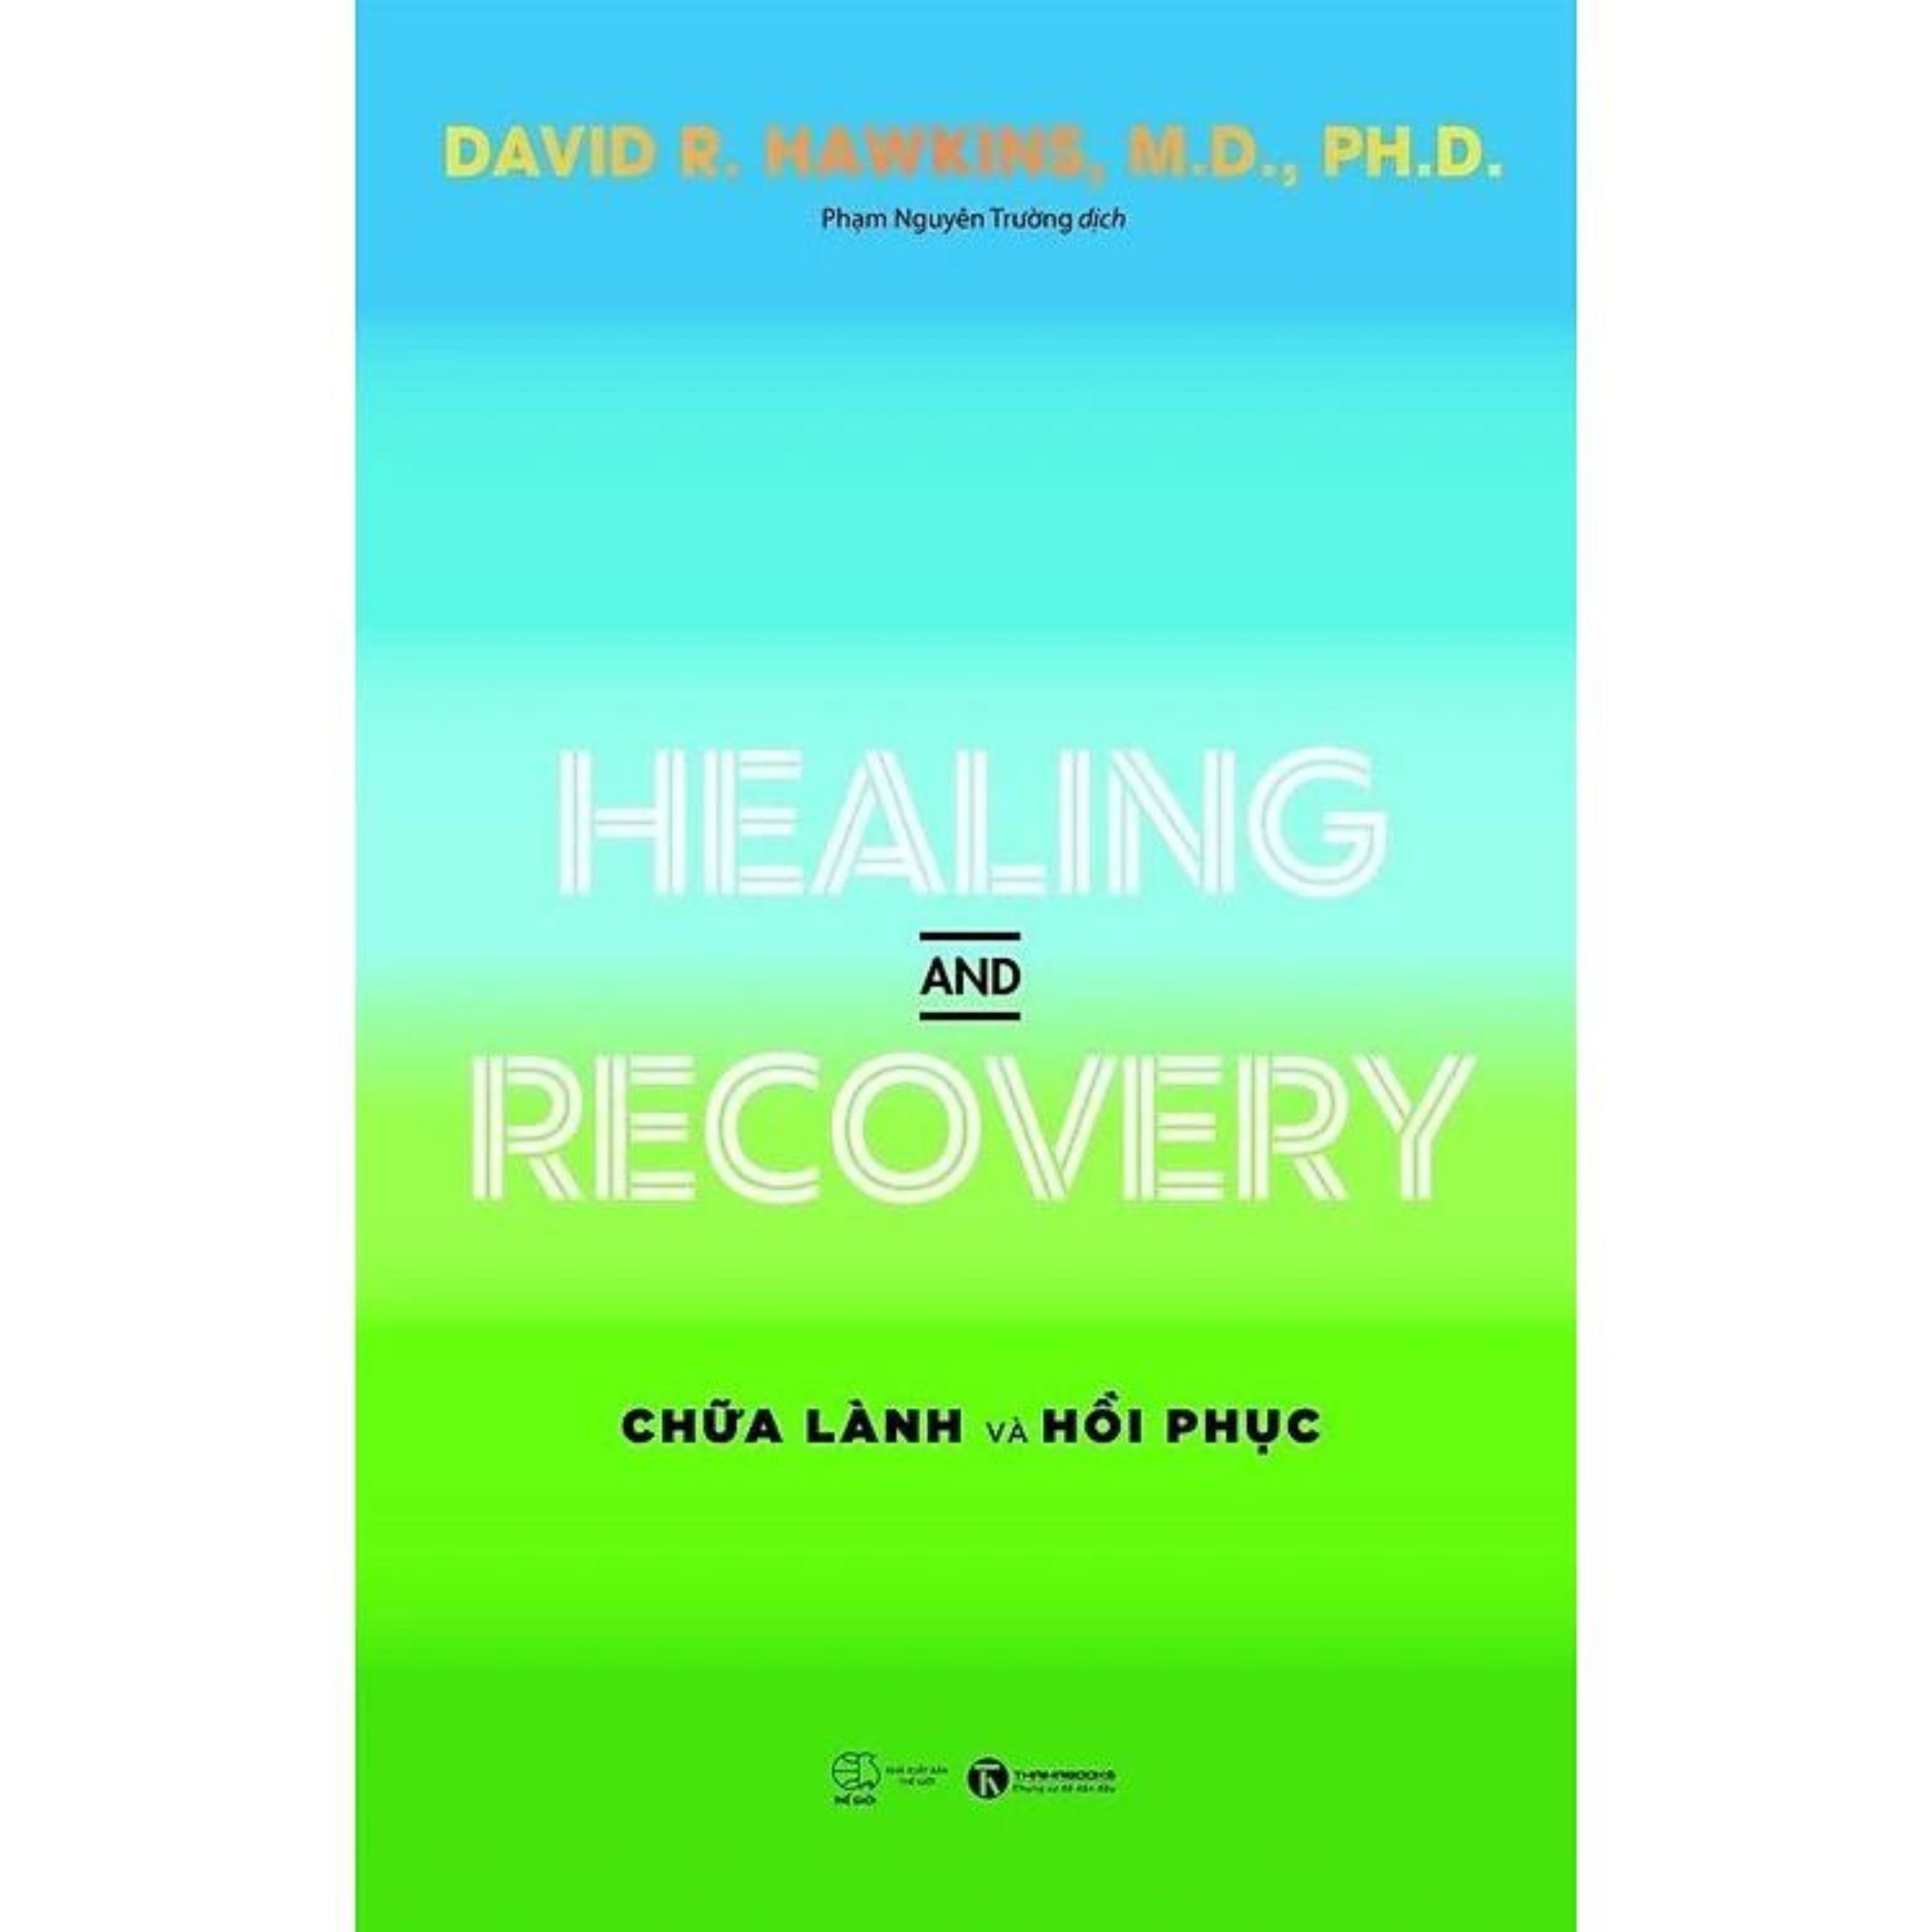 Sách Combo 2 Quyển Healing And Recovery - Chữa Lành Phục Hồi + Power Vs Force - Trường Năng Lượng (TH) (Tặng Bookmark)